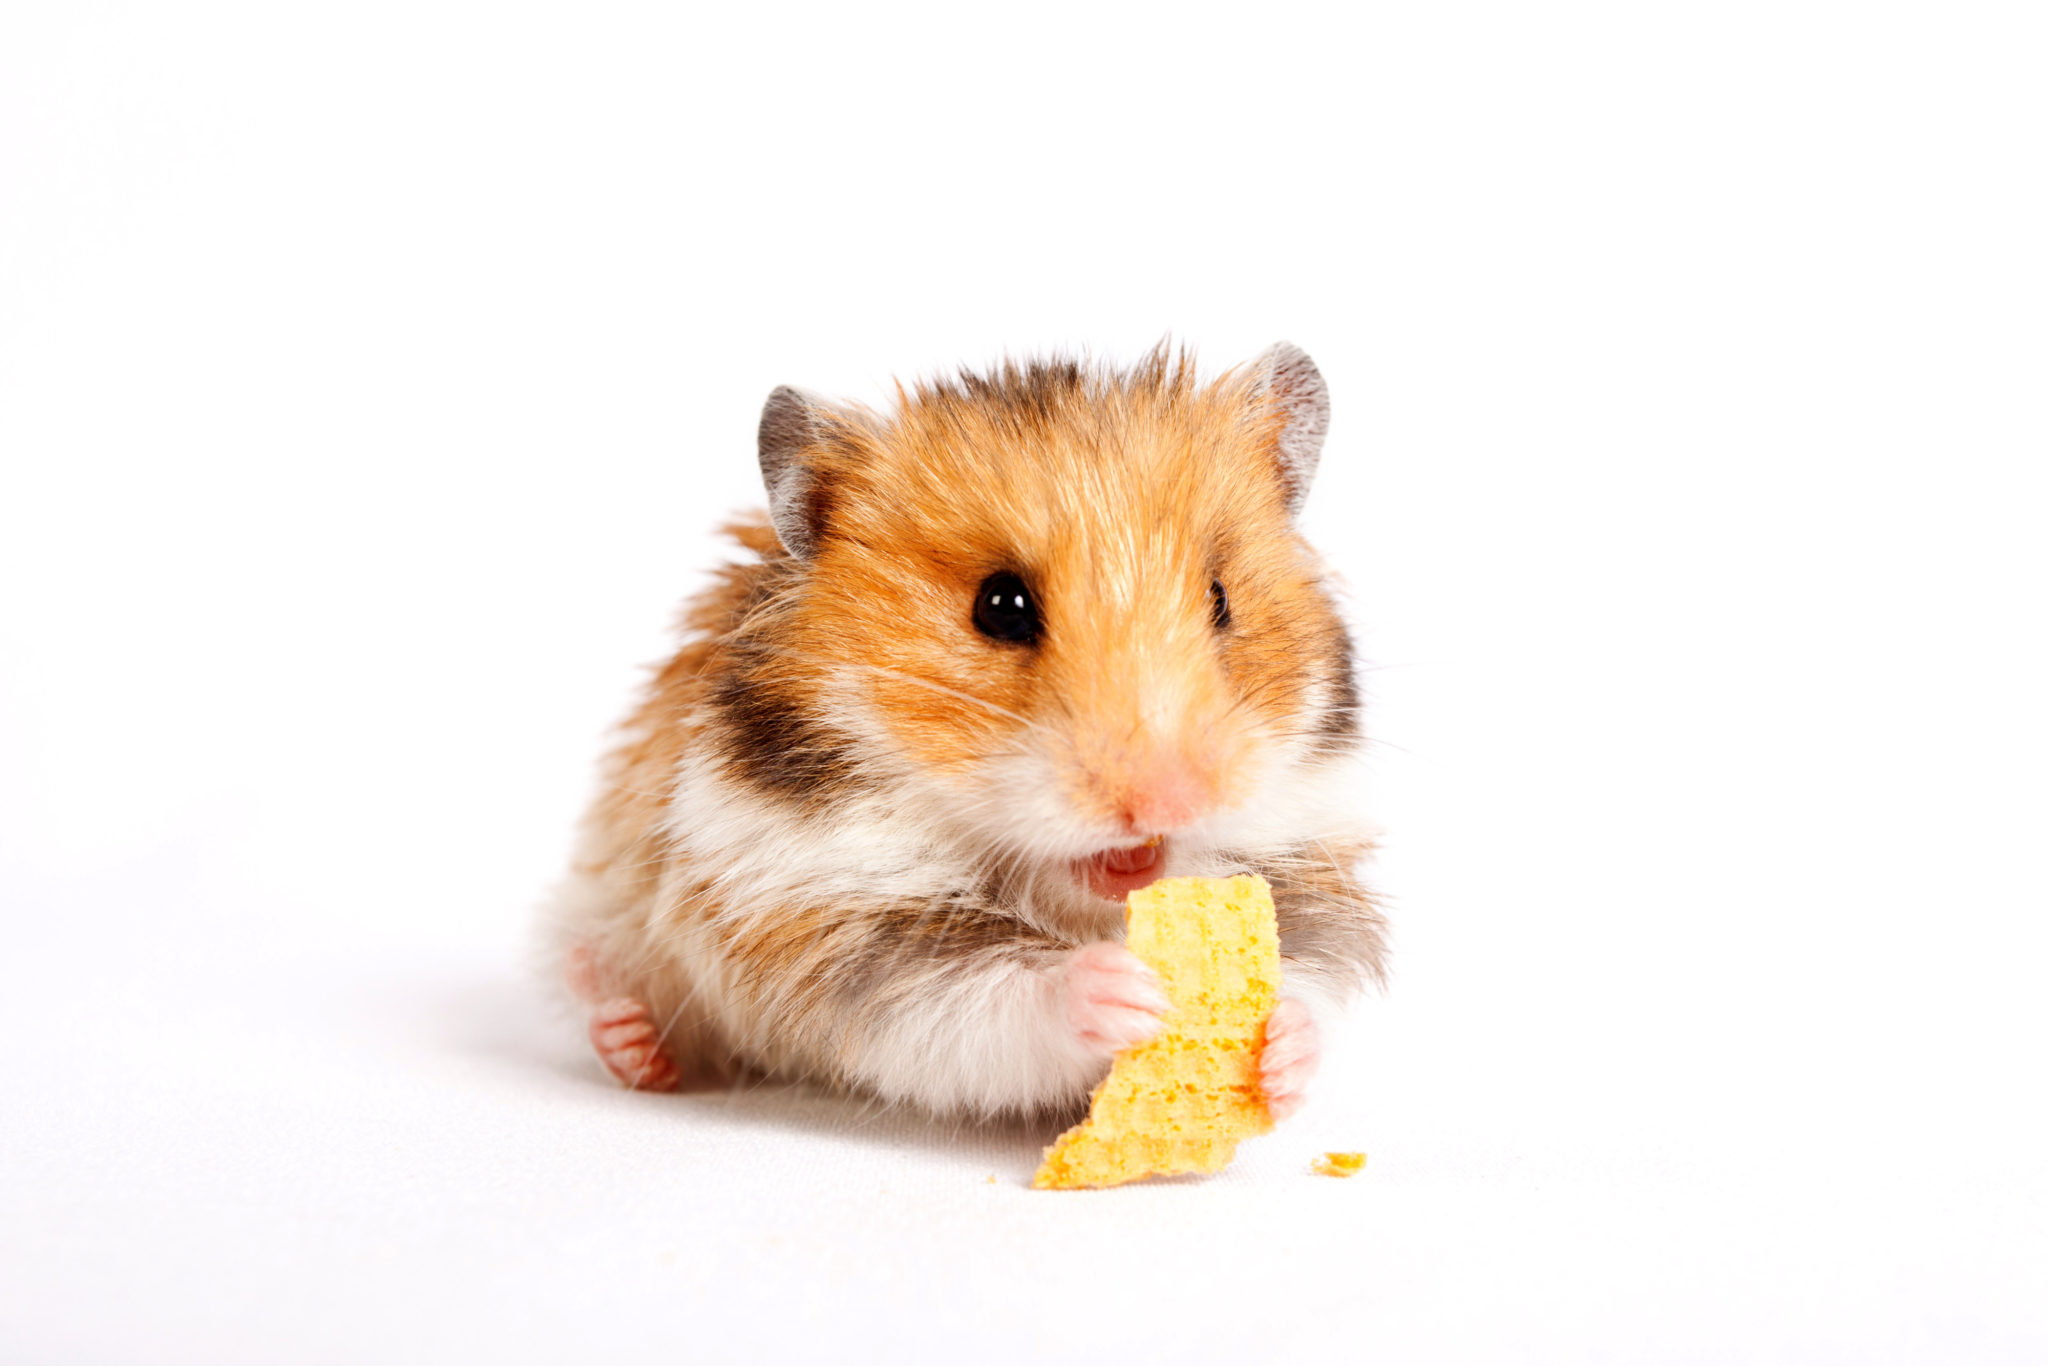 fat hamsters eating cookies